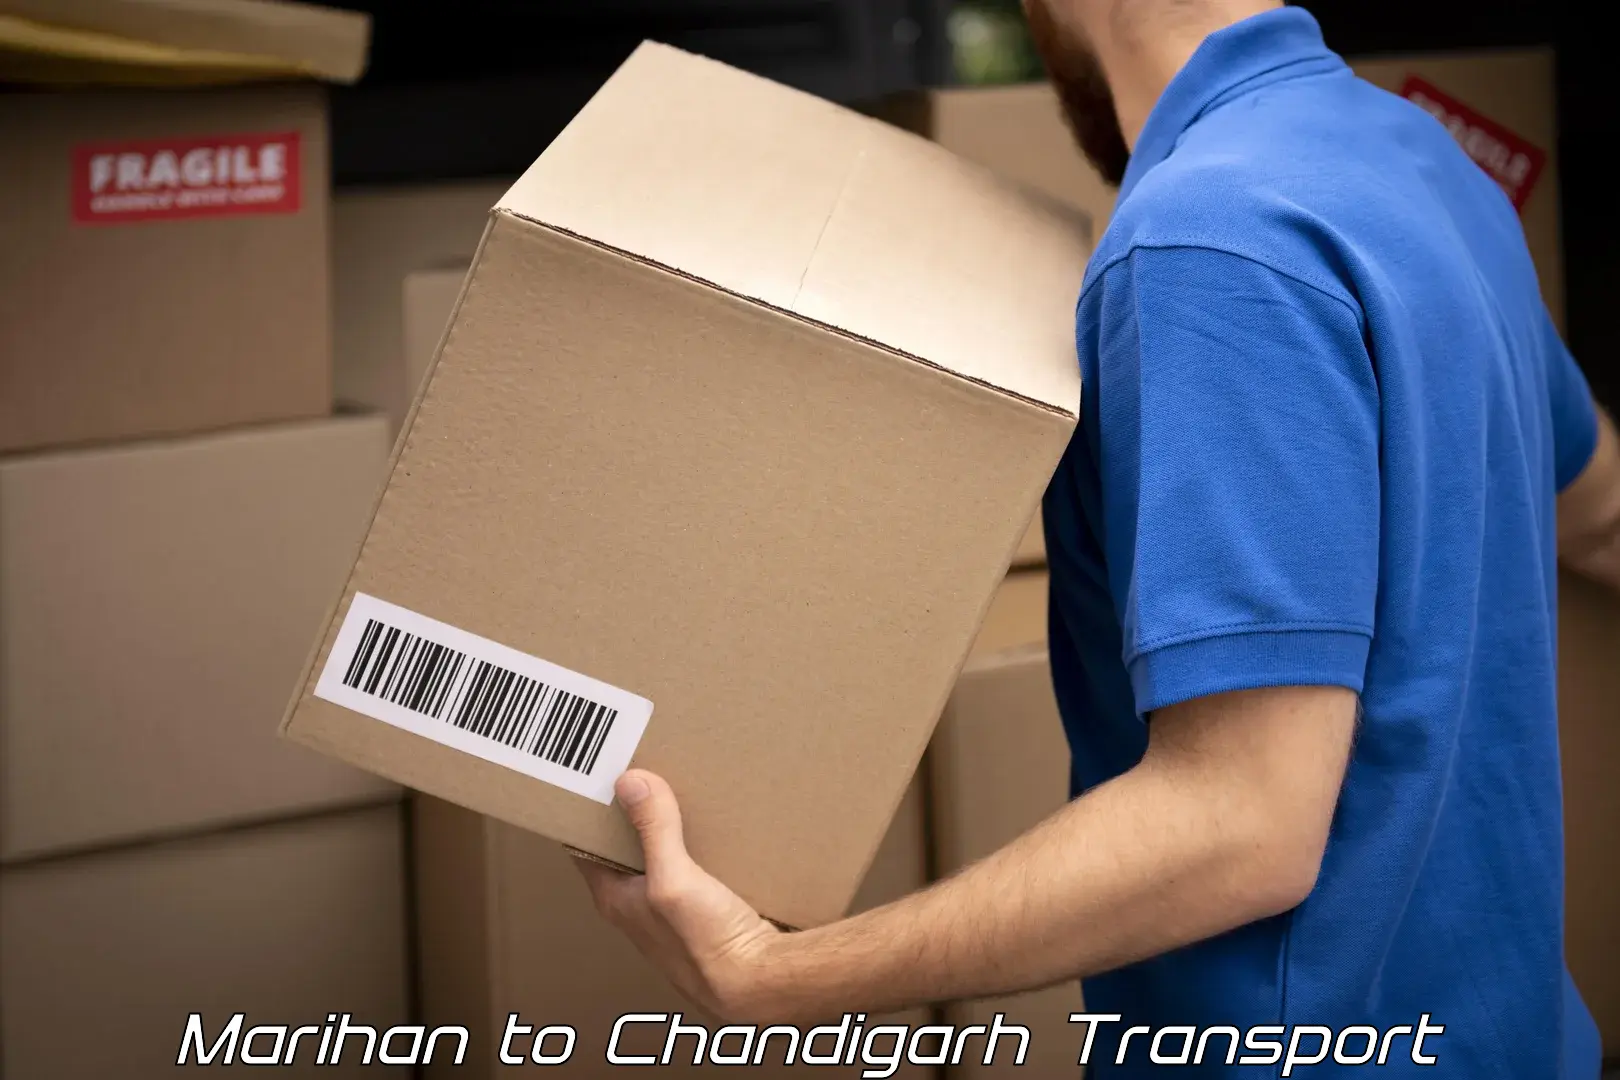 Bike shipping service Marihan to Chandigarh